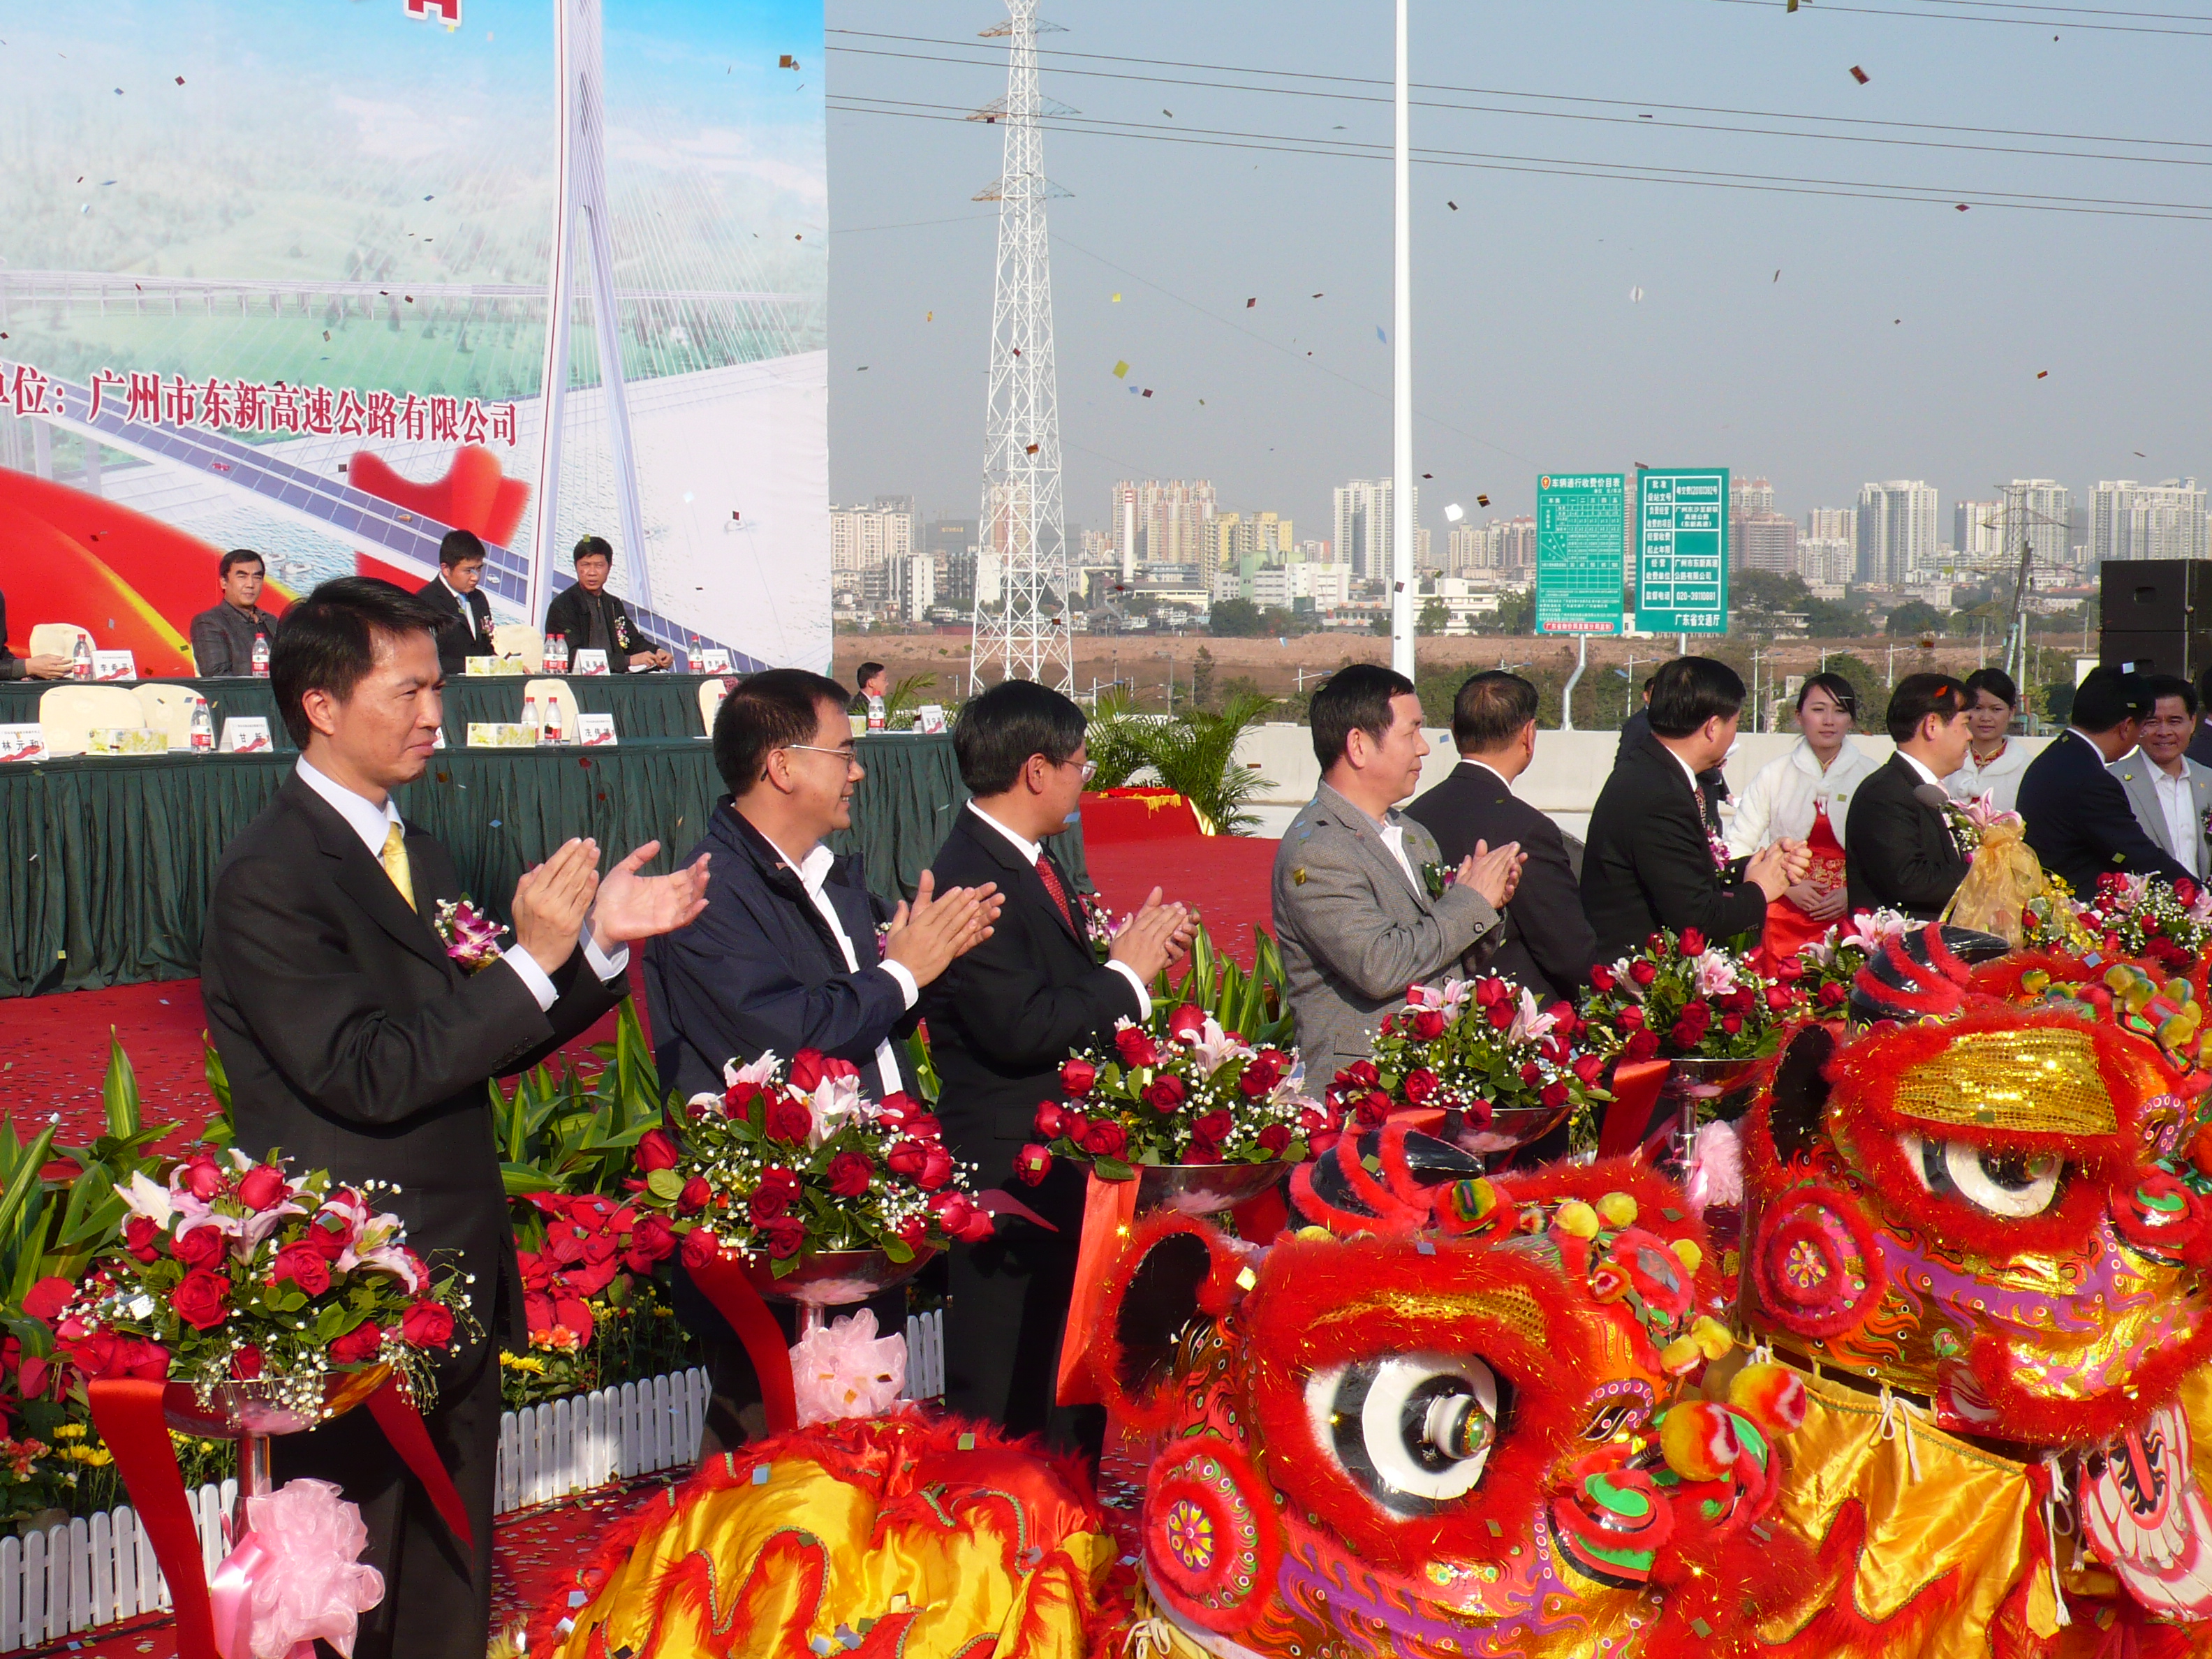 The opening of Guangzhou Dongxin Expressway